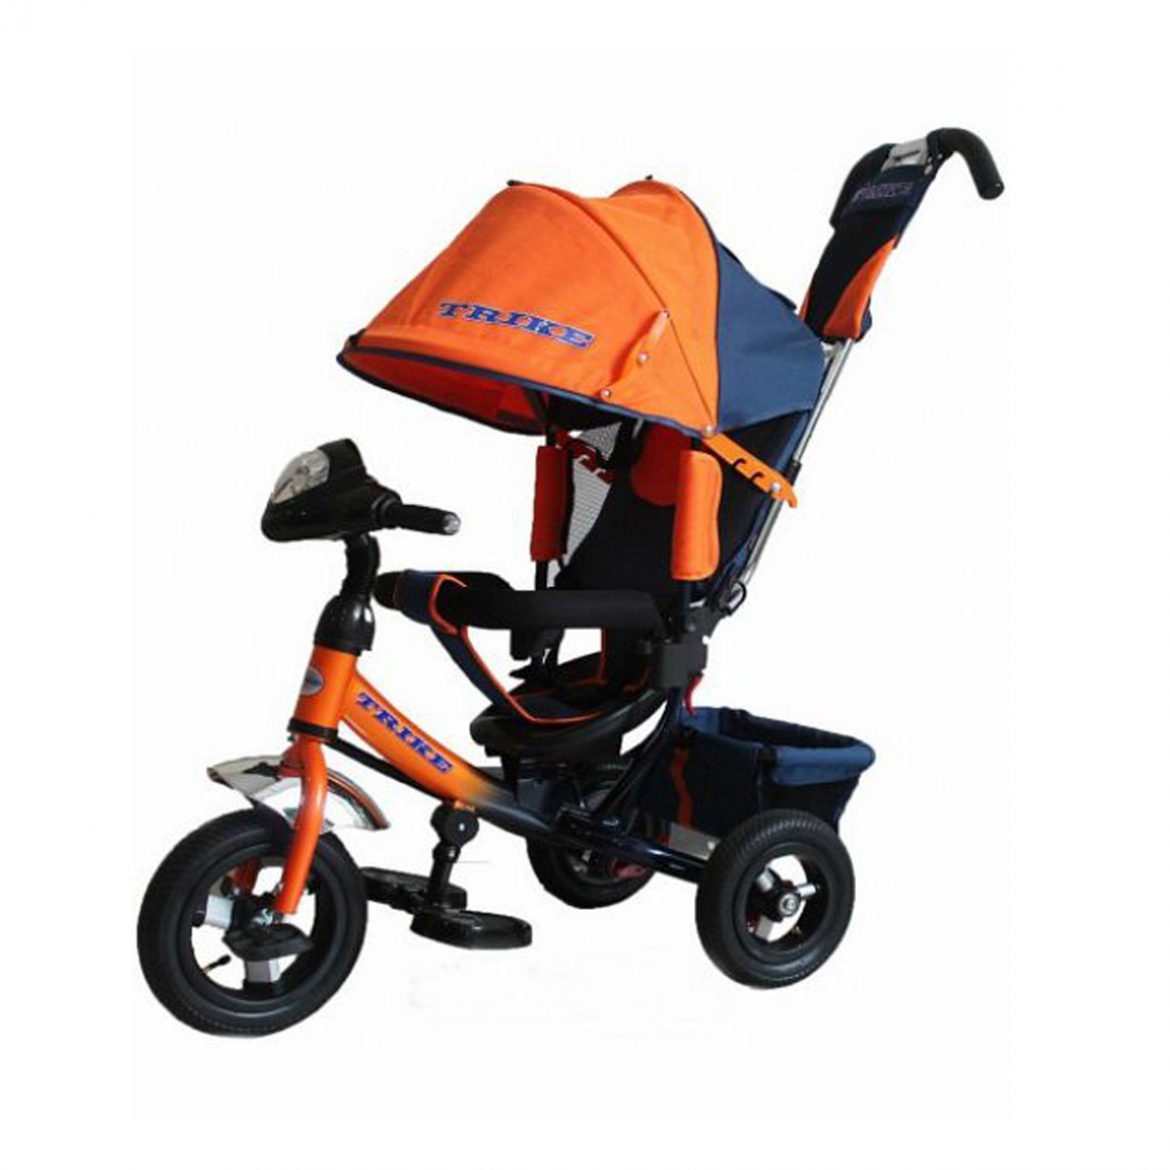 3 х колес велосипед. Trike tl3o. Велосипед капелла трехколесный с ручкой оранжевый. Kids Trike велосипед трехколесный оранжевый. Трехколесный велосипед Lexus Trike оранжевый.